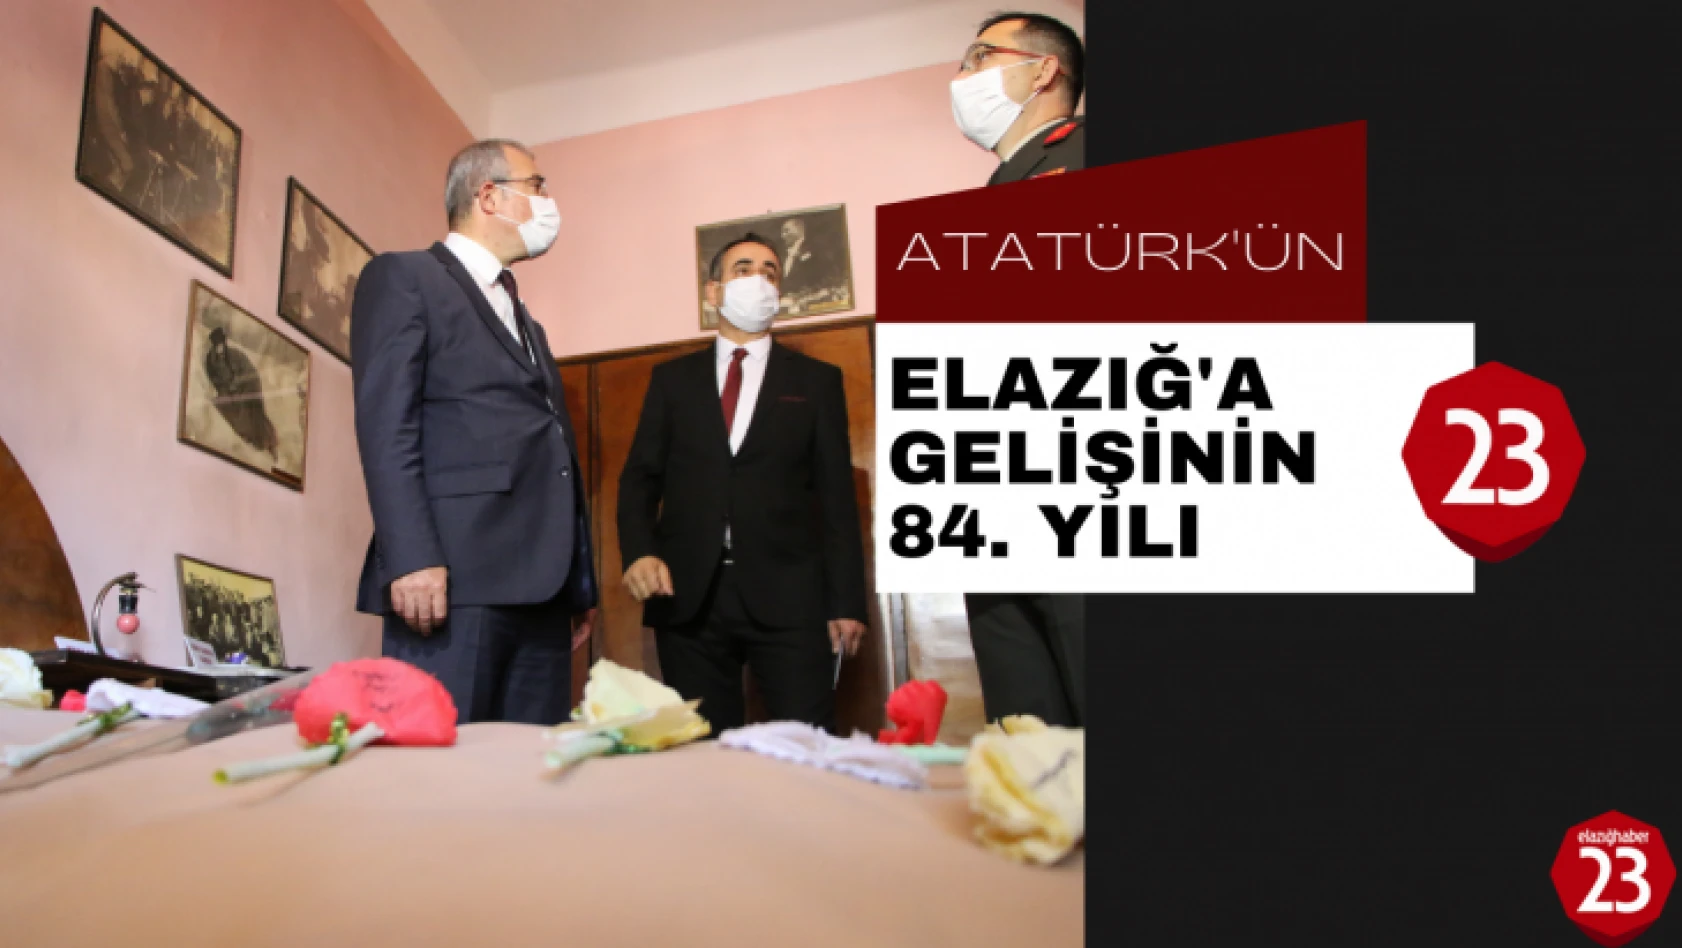 Atatürk'ün Elazığ'a Gelişinin 84. Yılı, Elazığ'da Kaldığı Oda Ziyaret Edildi